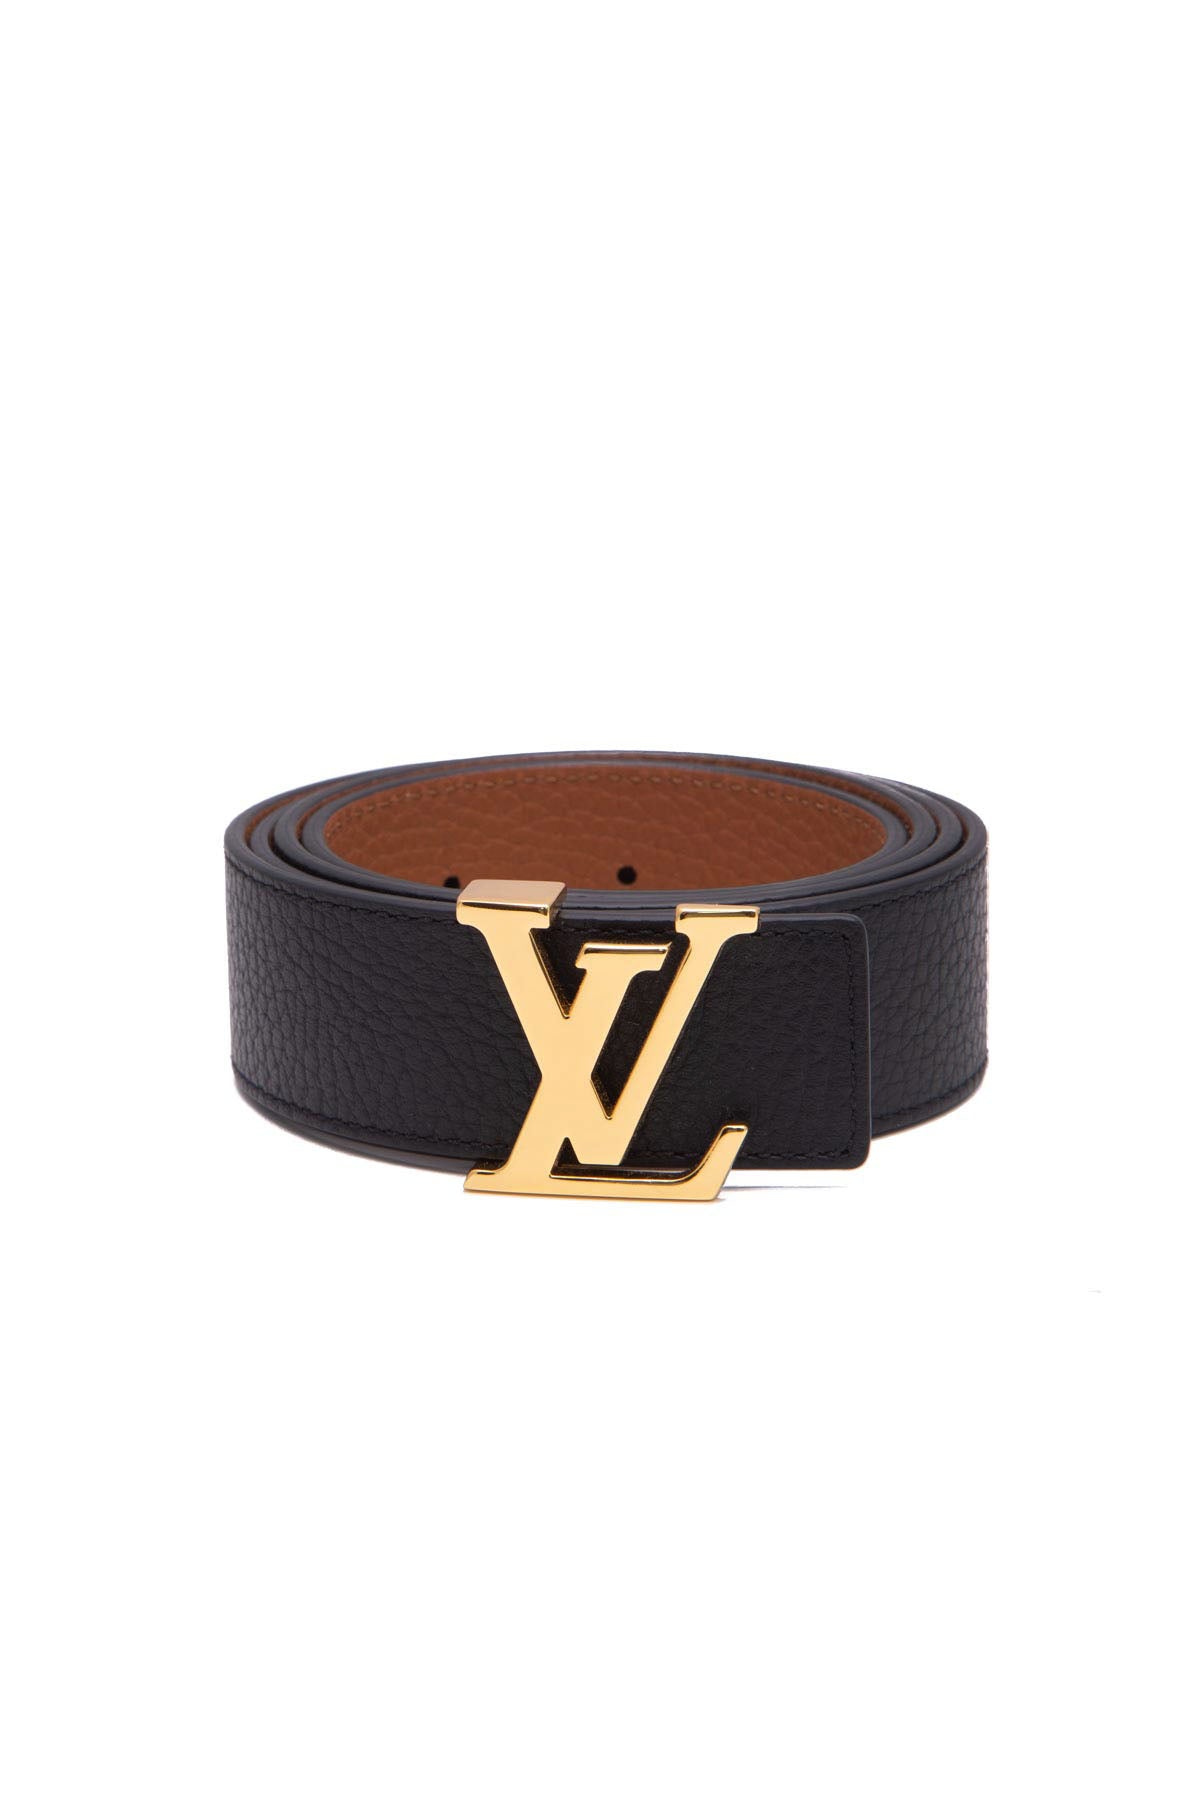 Louis Vuitton Damier Graphite LV Inventeur Reversible Belt 90/36